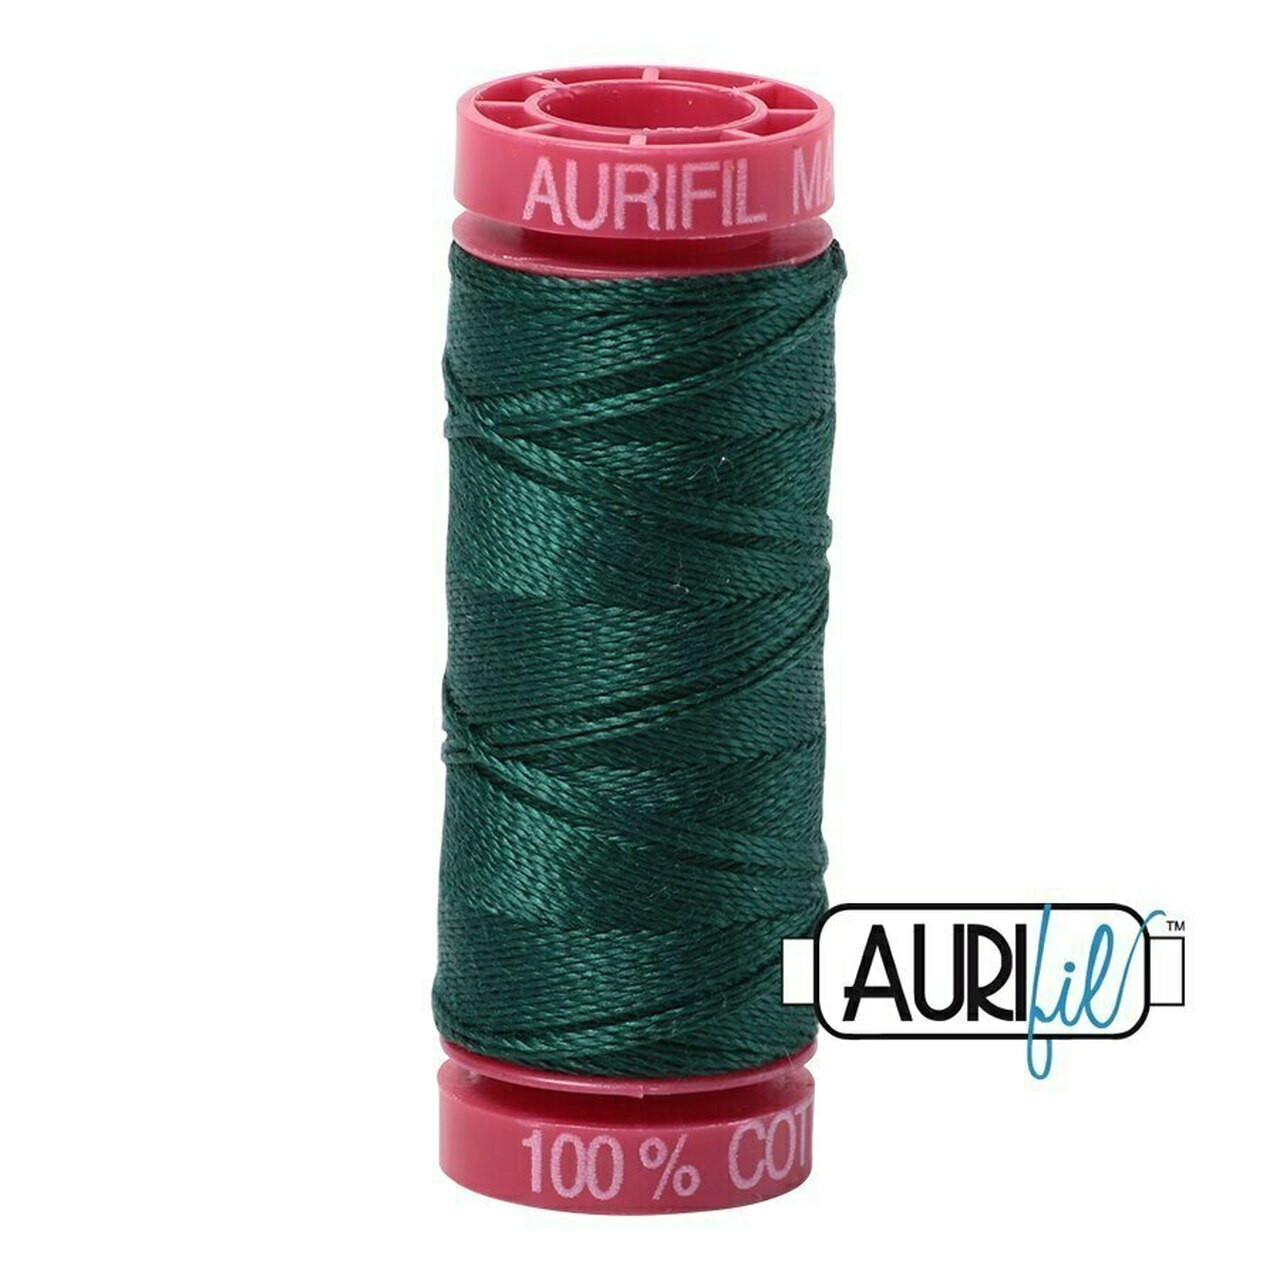 Aurifil 2885 - Medium Spruce